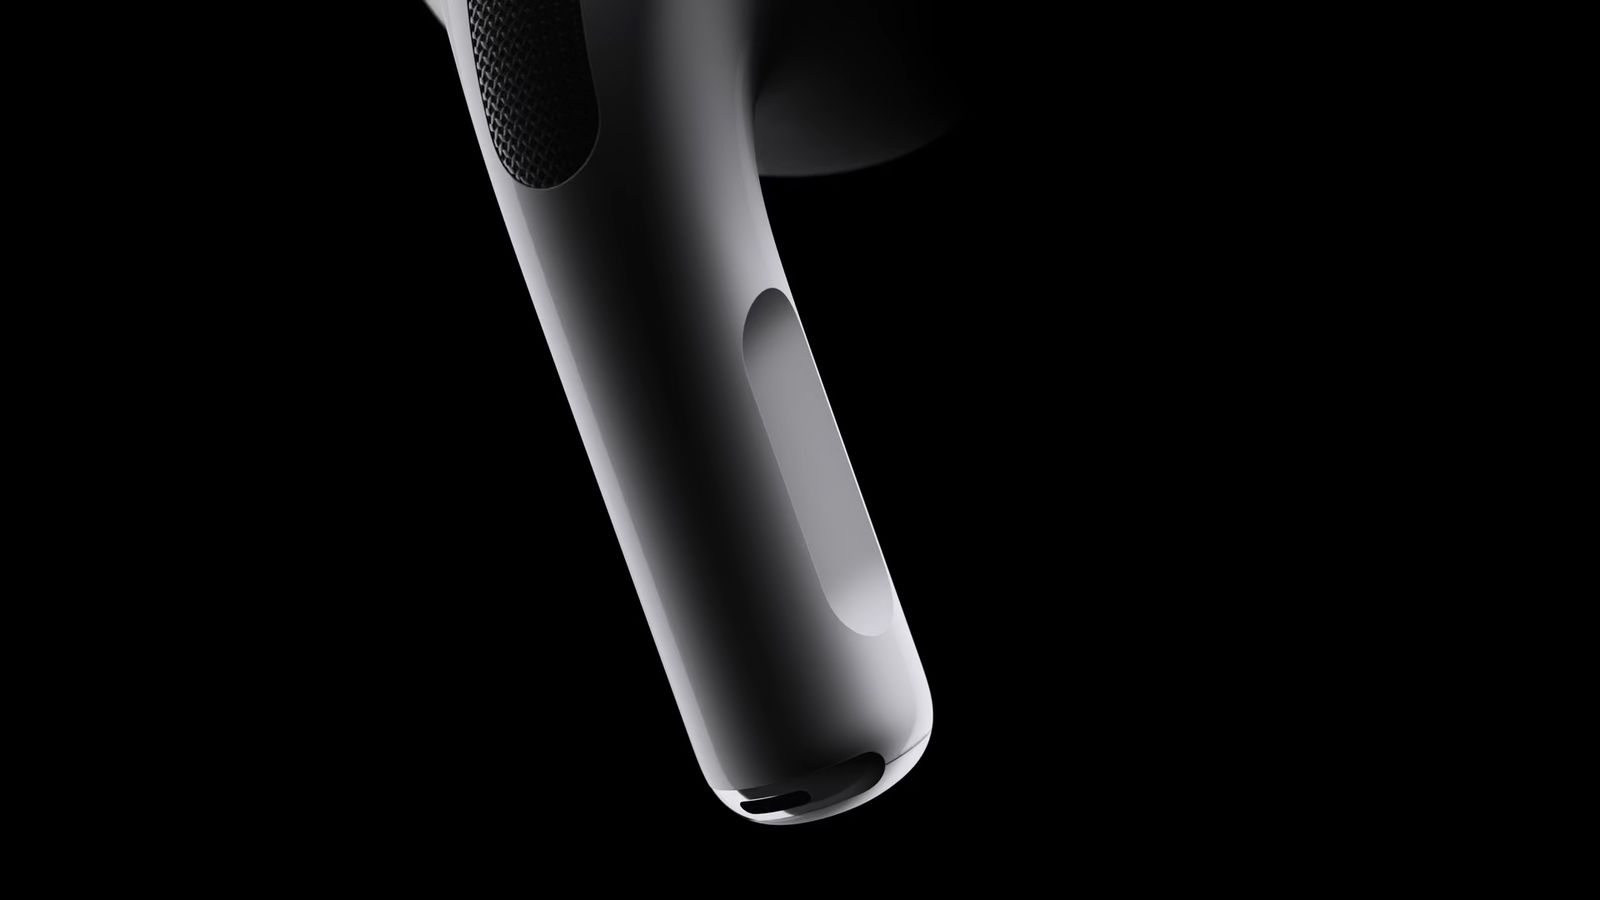 Dari iPhoneIslam.com, tampilan close-up AirPods hitam yang modern dan elegan dengan latar belakang gelap, menonjolkan desain dan teksturnya yang ramping.